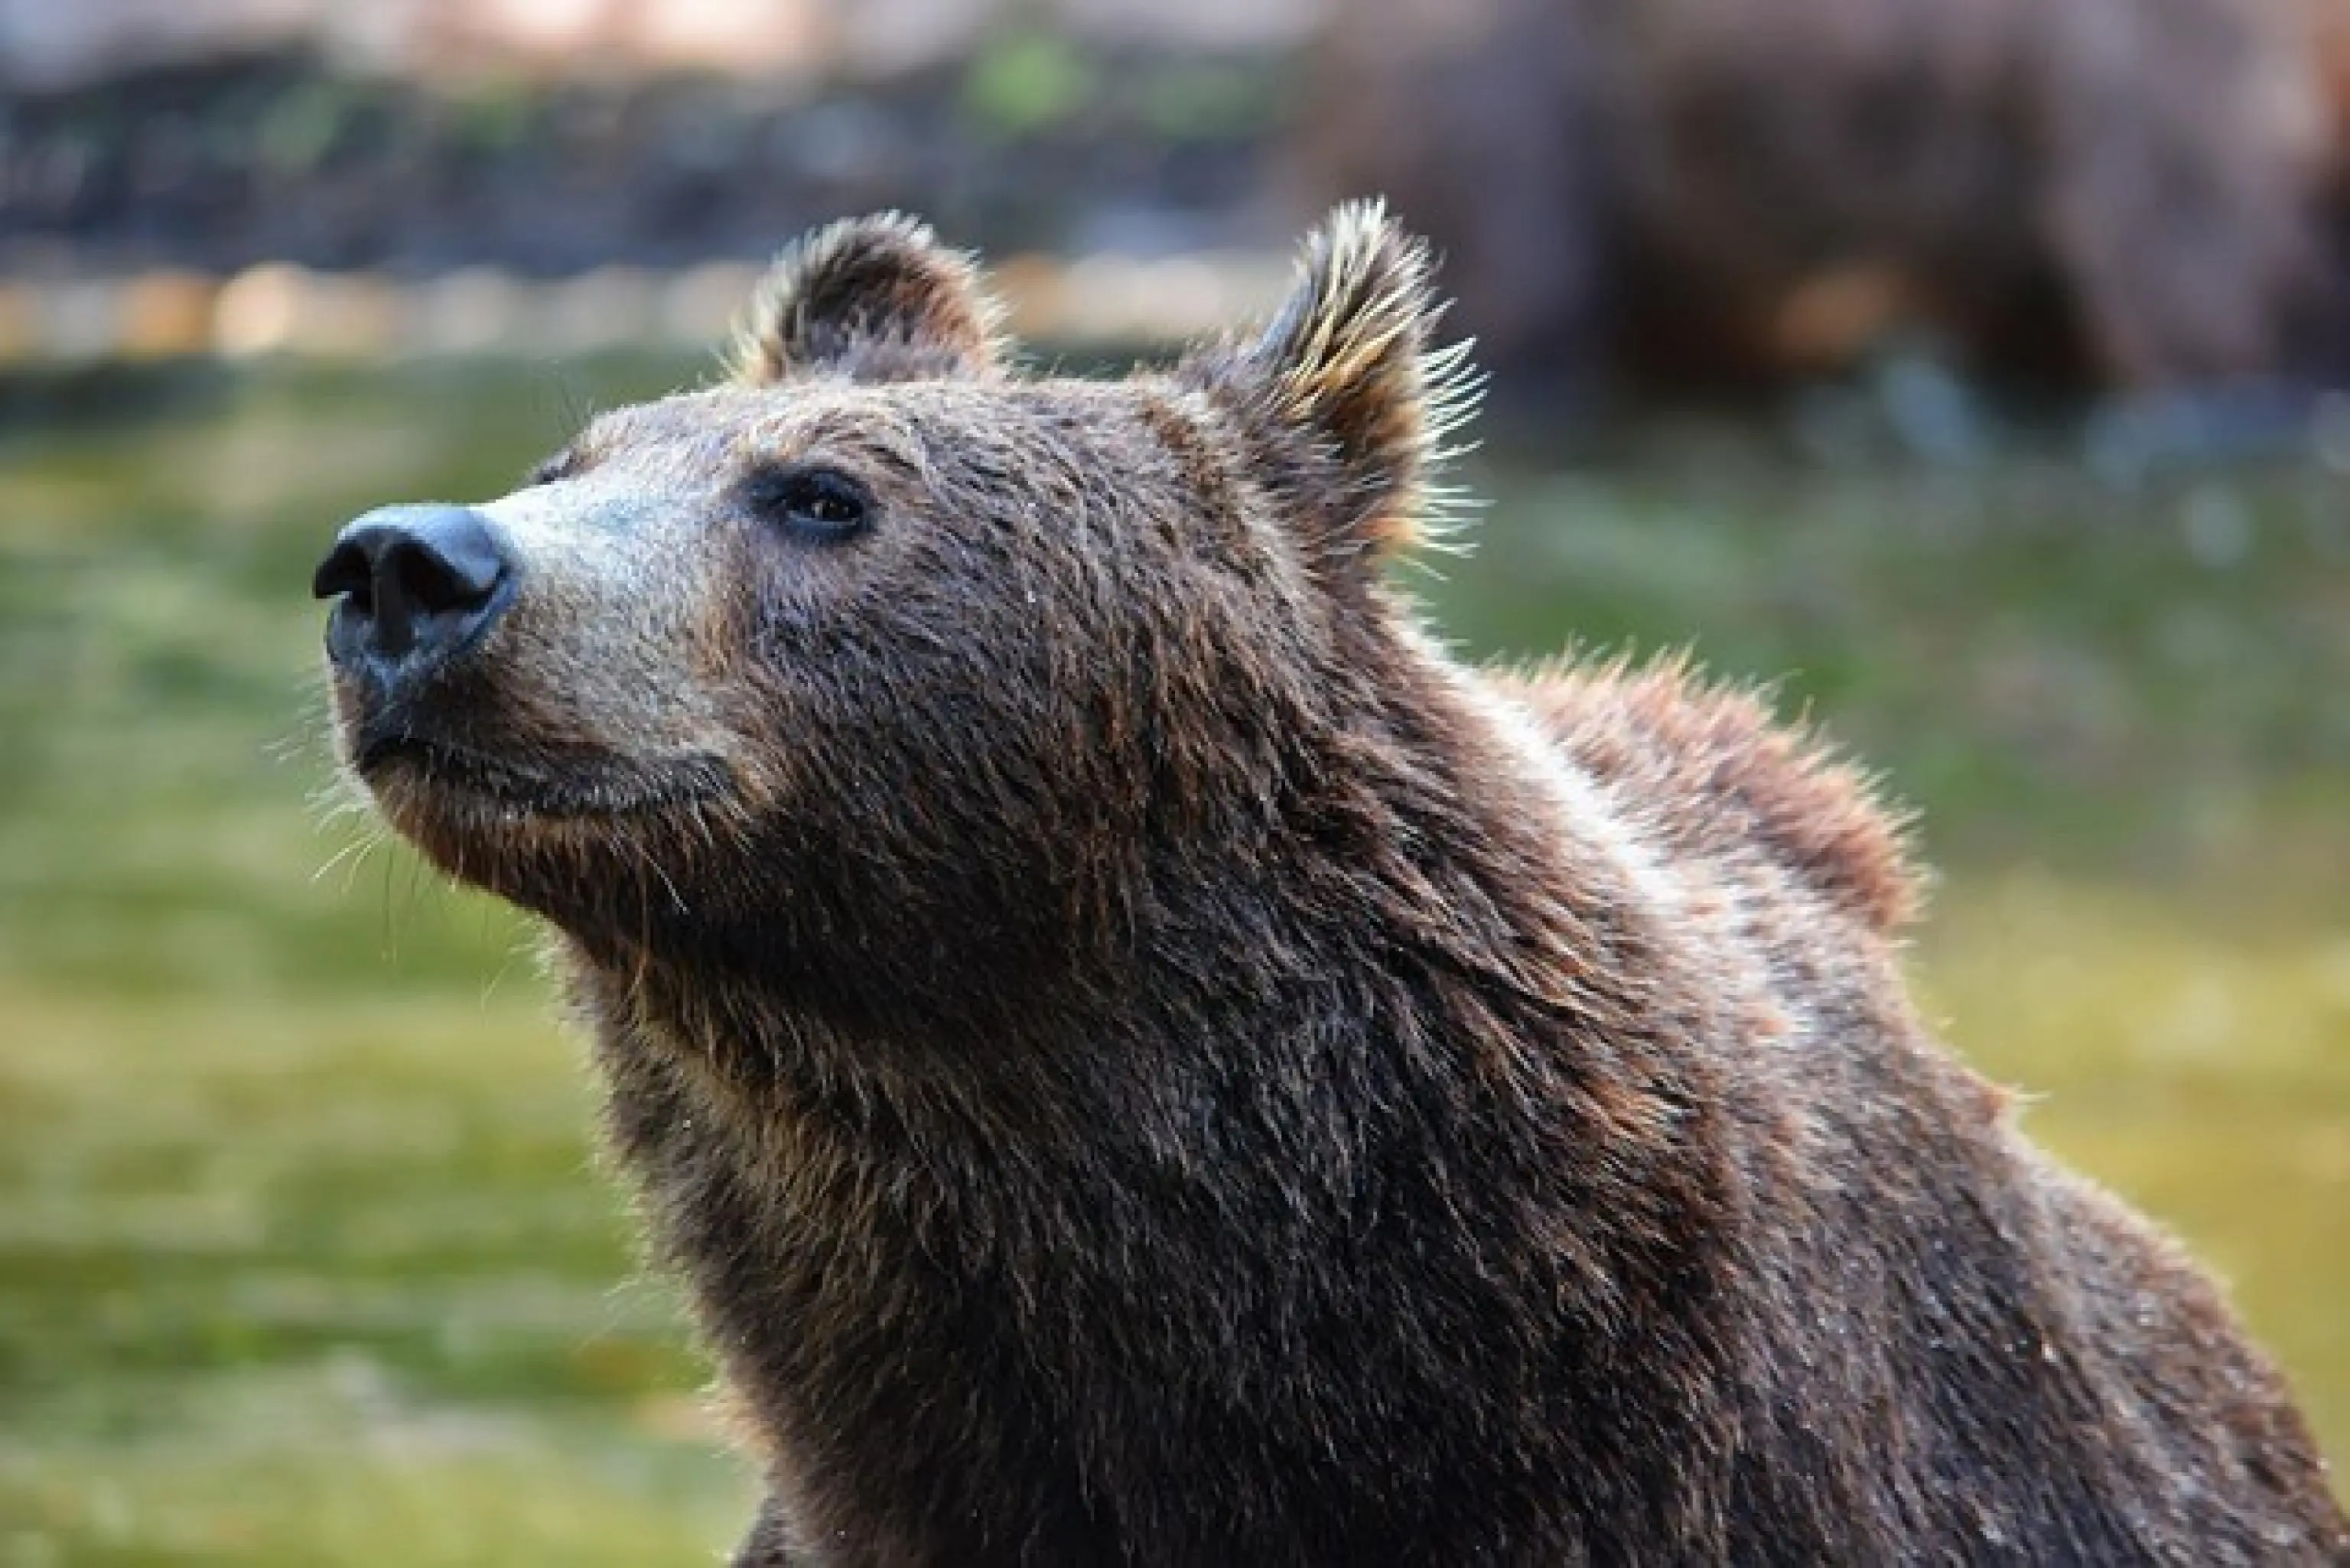 Spray anti orso in Trentino: ai Forestali la bomboletta salva-vita